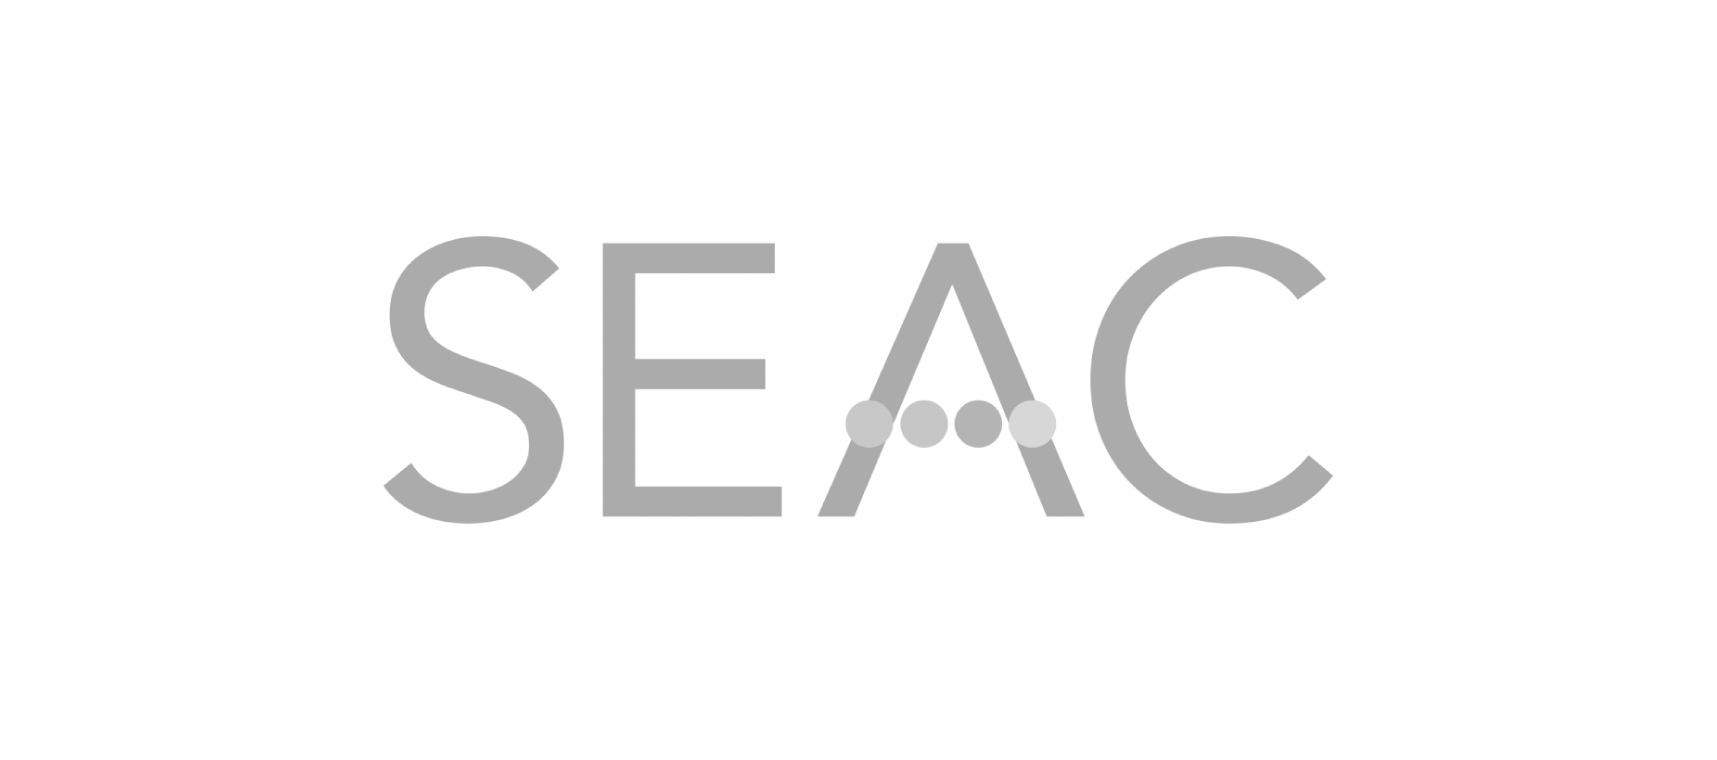 Logo_Seac_grjgjk-01